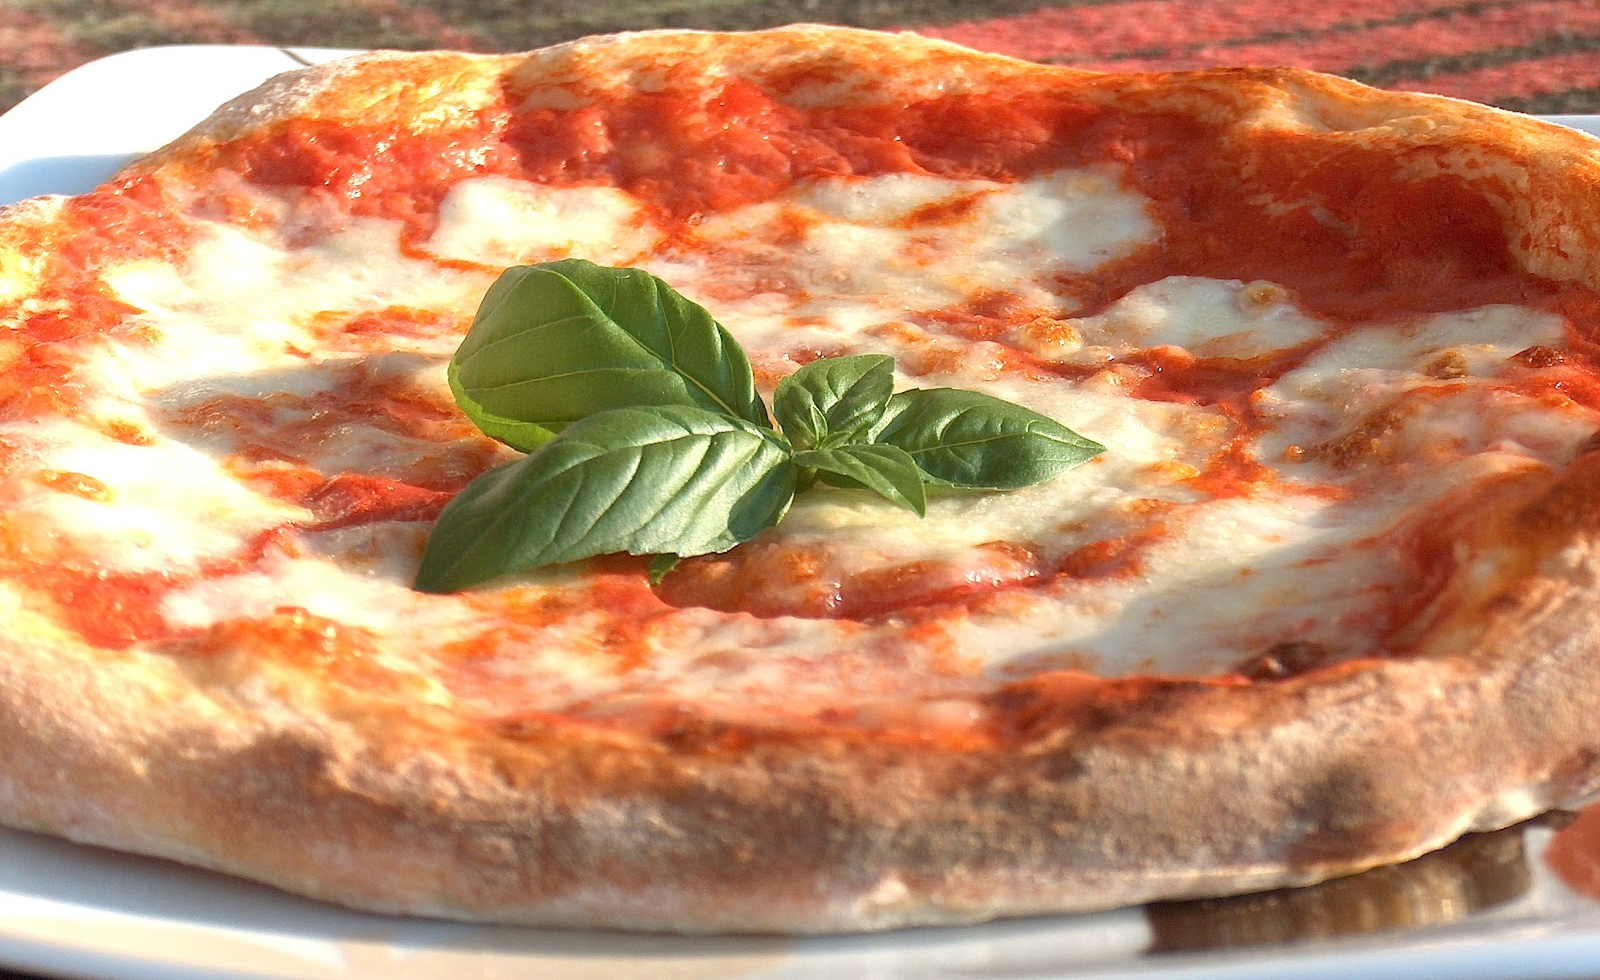  Cidec: A Napoli la pizza più buona e sicura del mondo